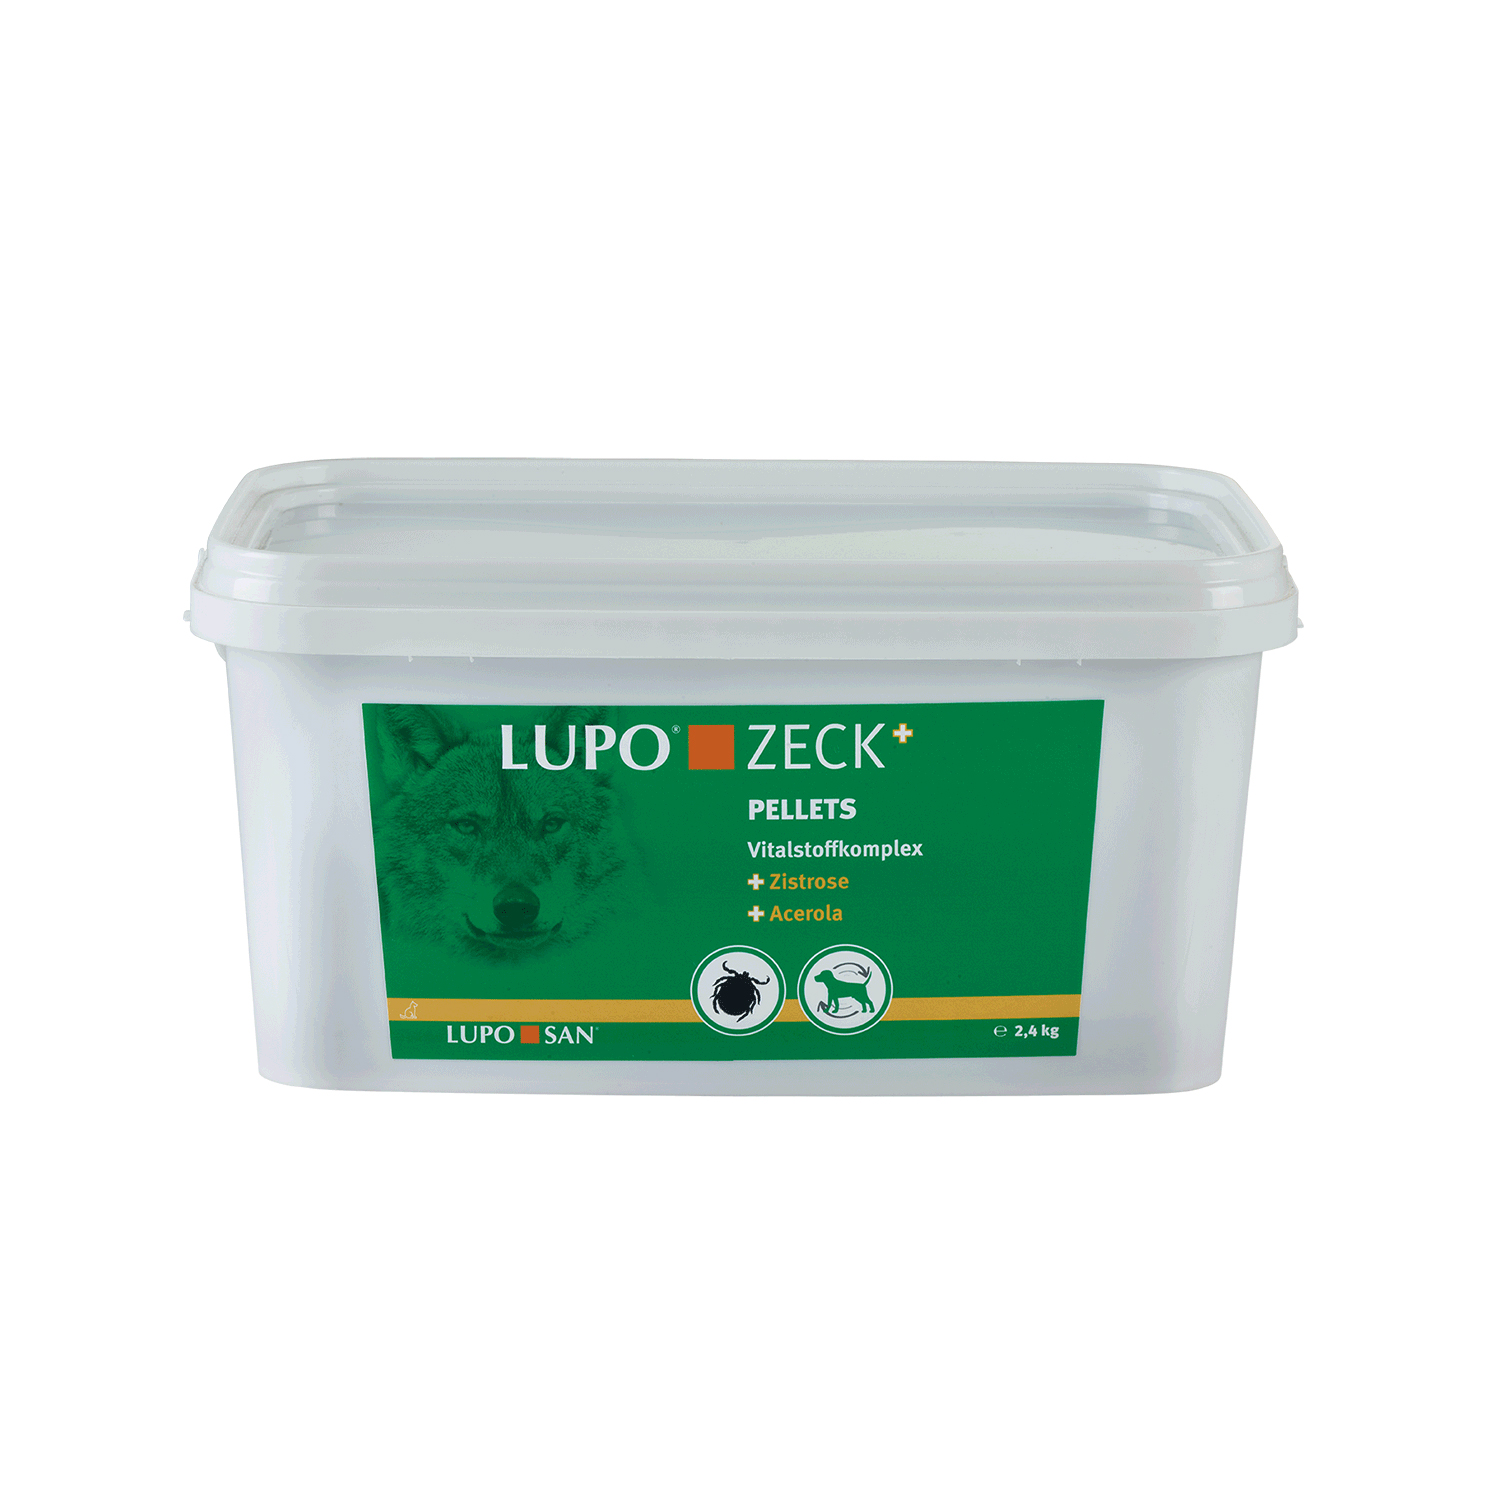 LUPO ZECK+ 2,4 kg